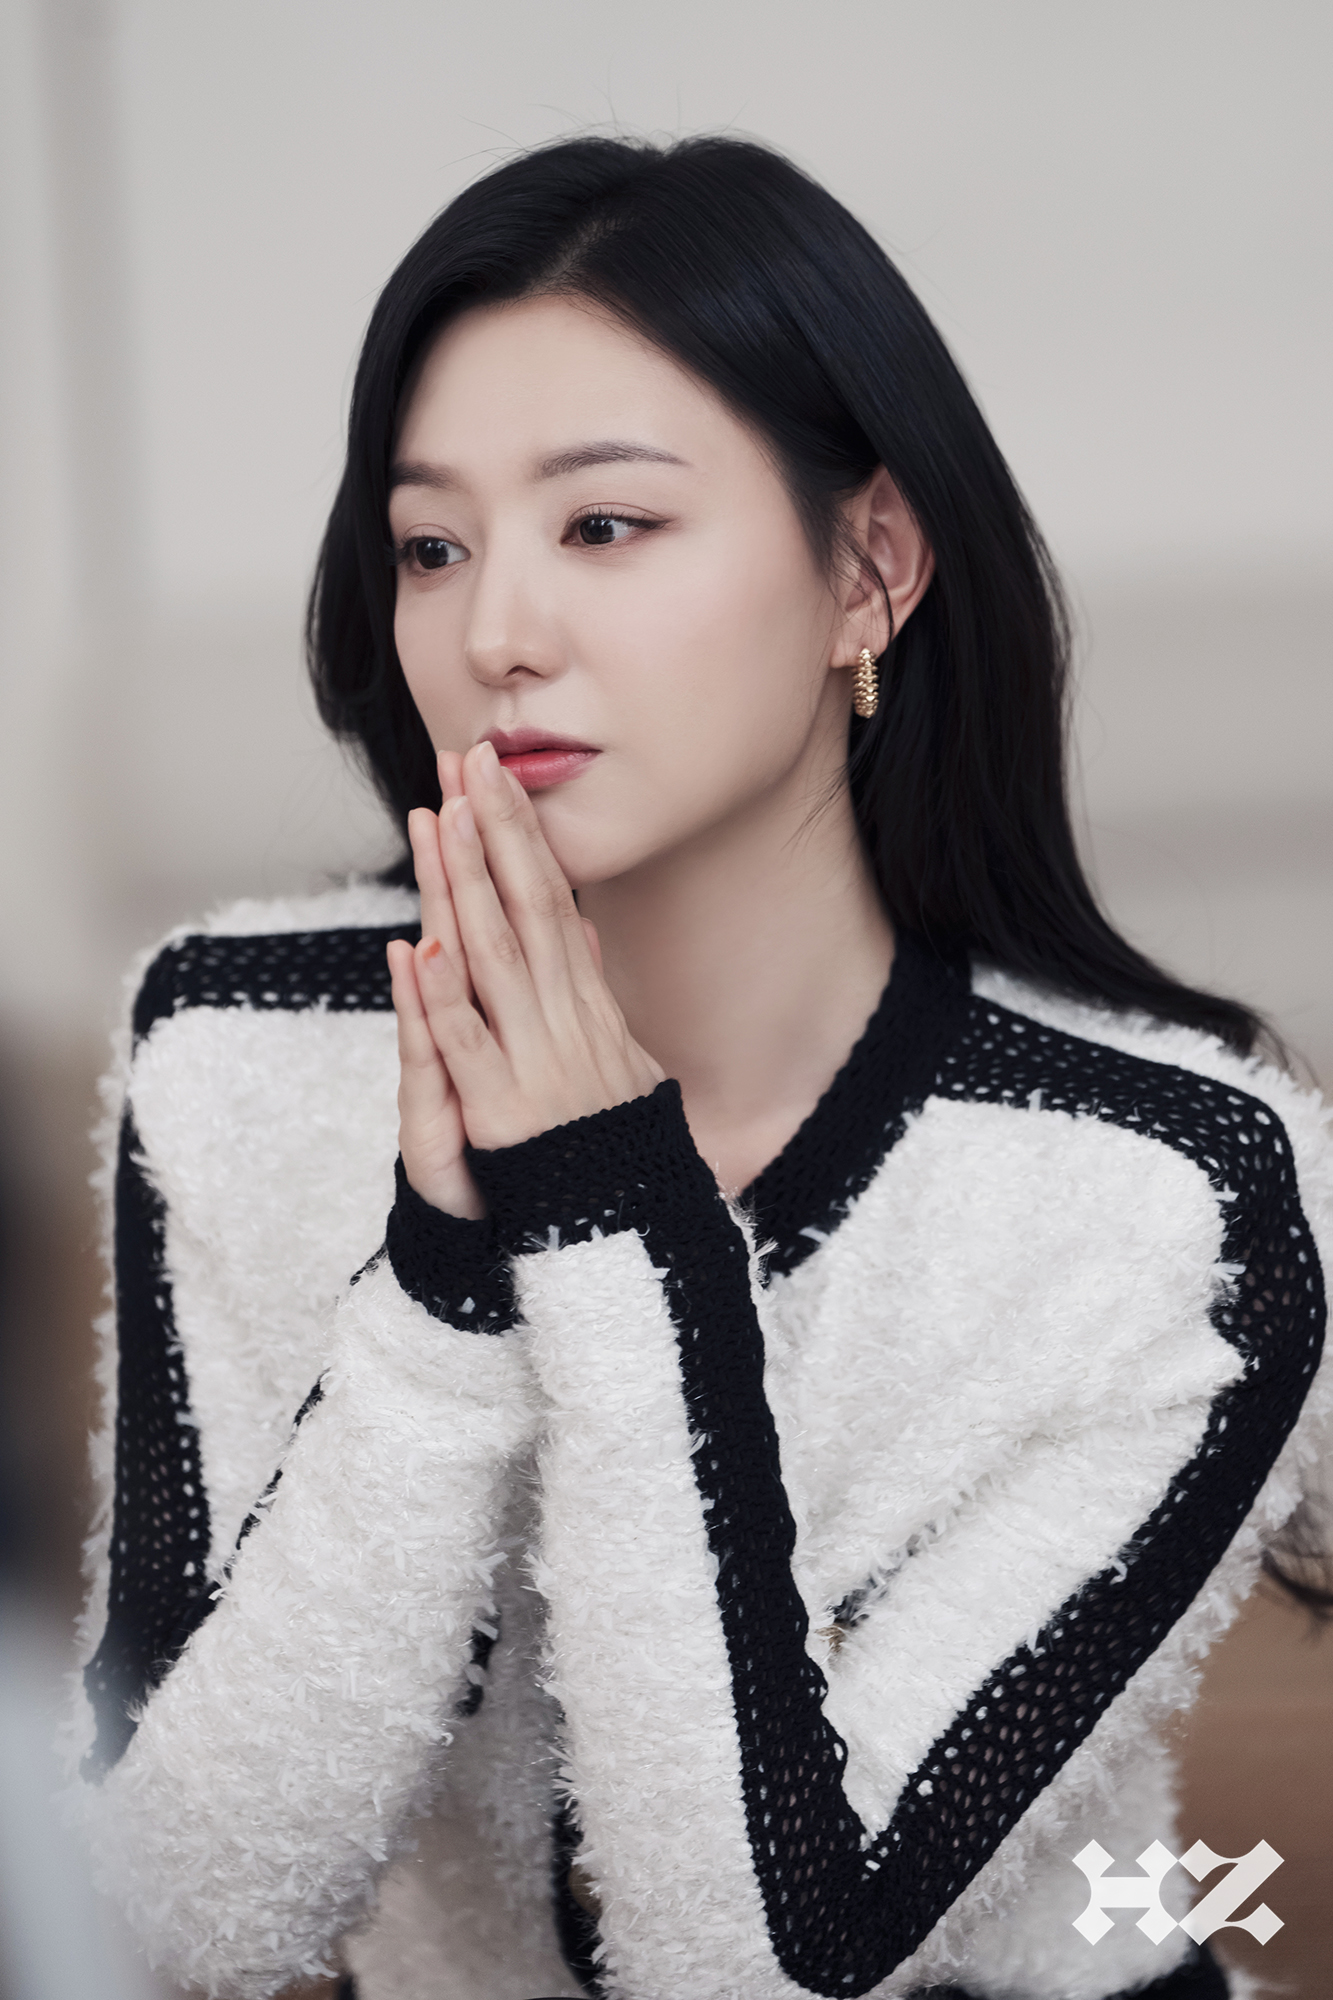 Khán giả lẫn giới truyền thông đánh giá cao nhan sắc và màn thể hiện của Kim Ji Won trong Nữ hoàng nước mắt. Qua vai Hong Hae In, cô chứng minh năng lực biến hóa đa dạng trên màn ảnh nhỏ. Bất kỳ chủ đề nào có liên quan đến người đẹp đều được bàn luận sôi nổi